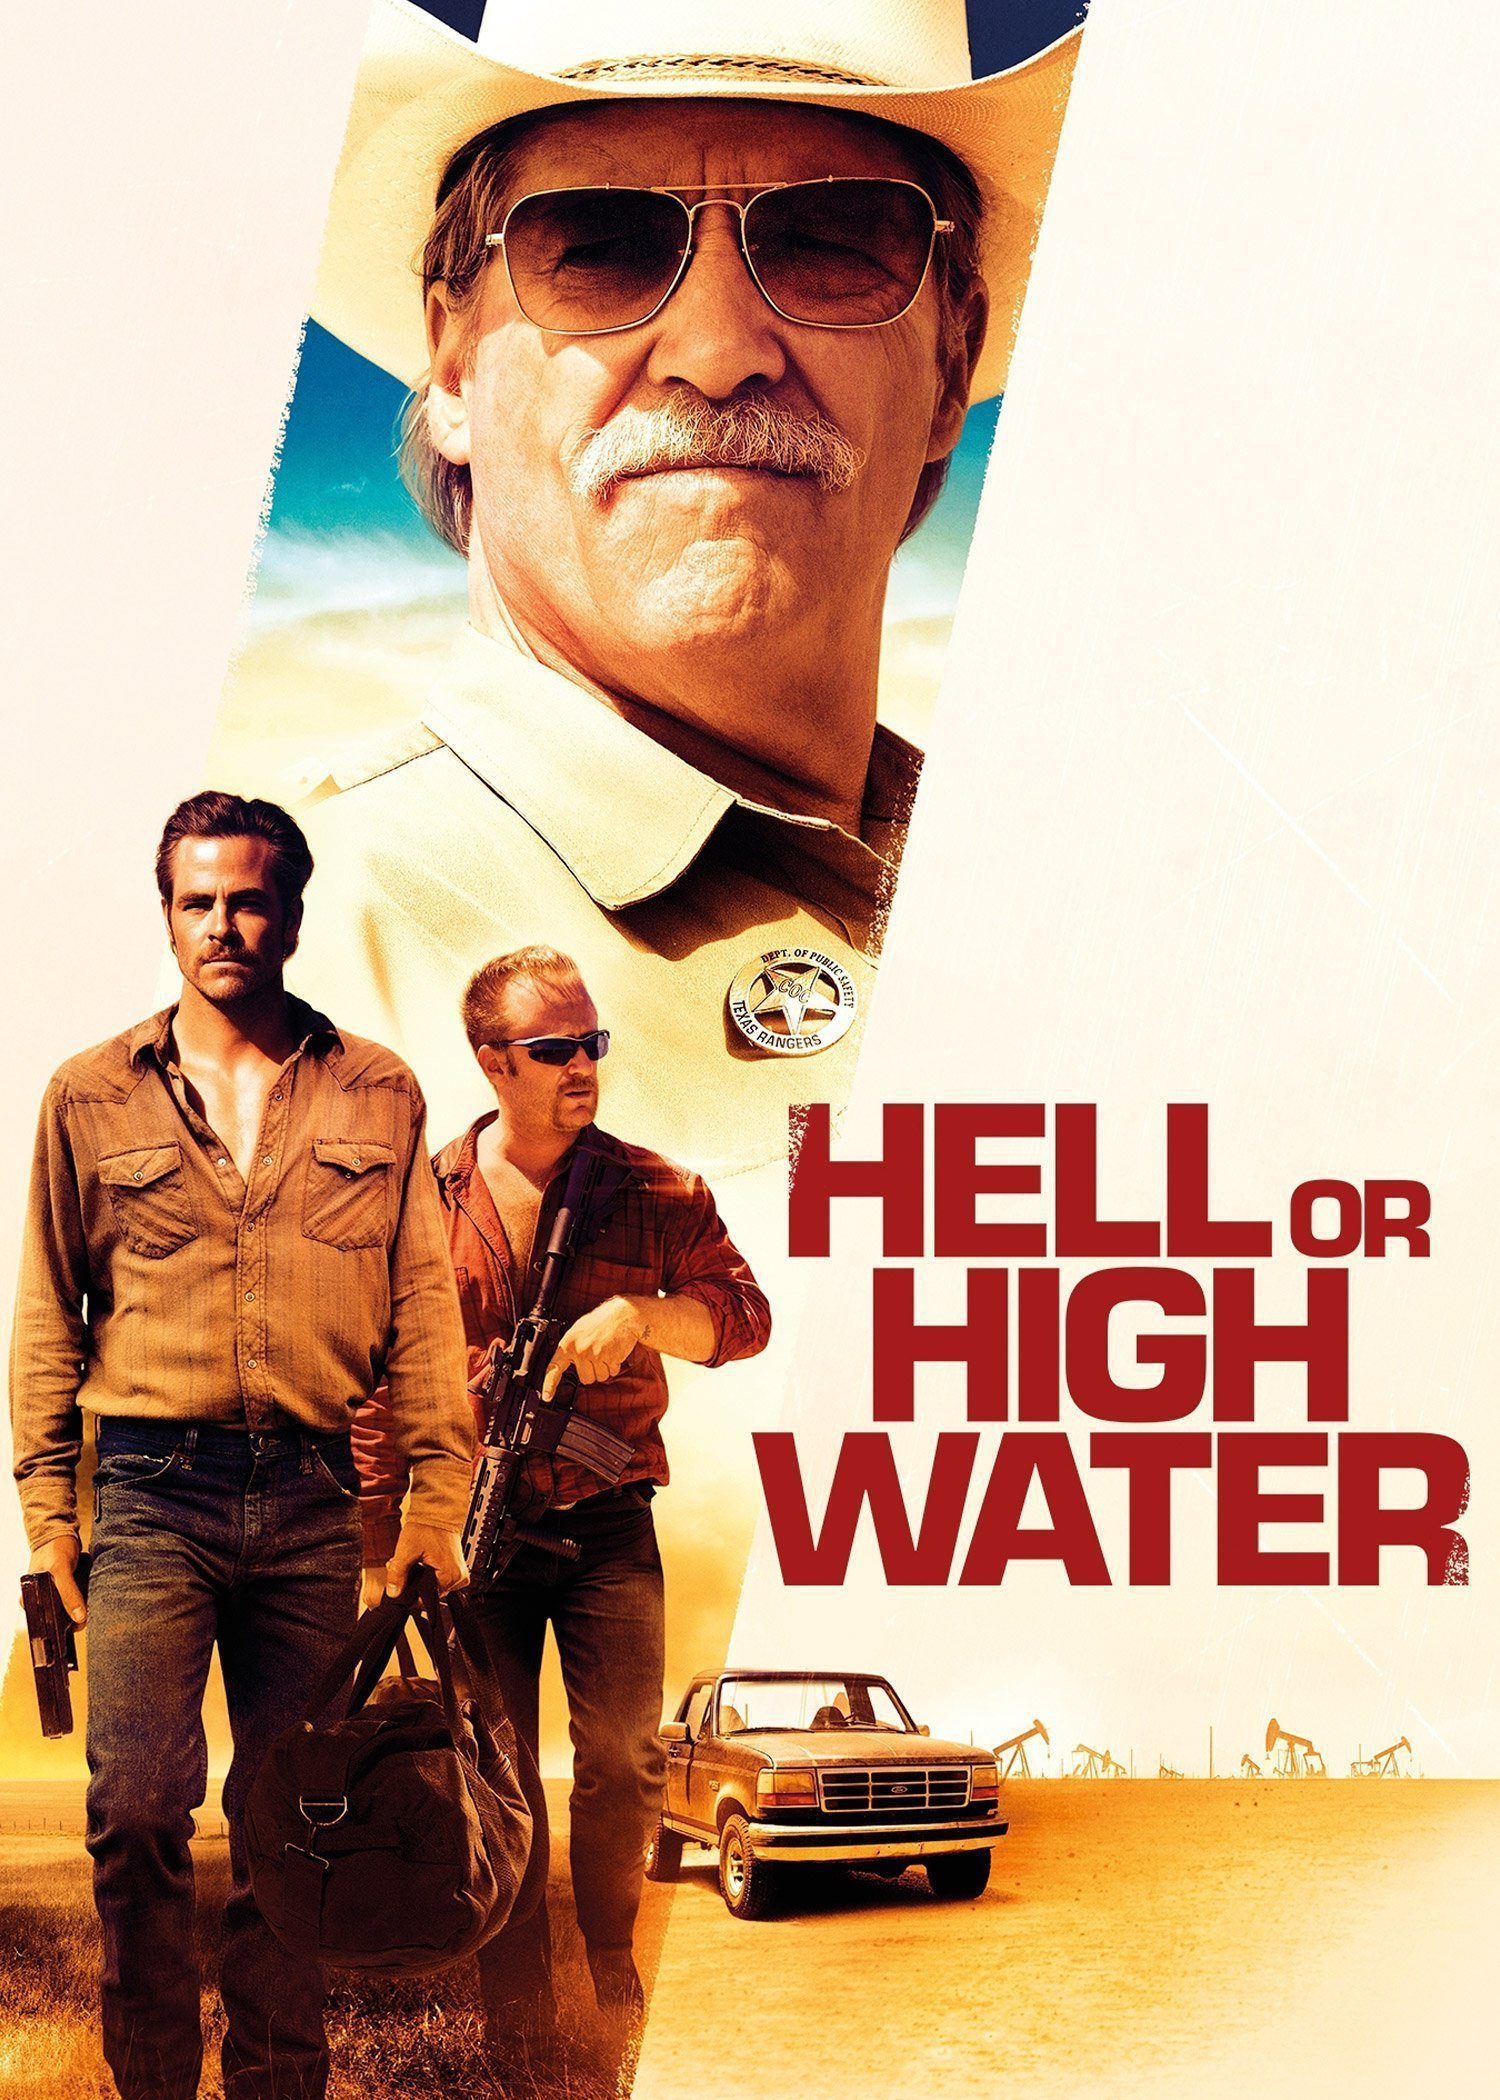 Hell or High Water (2016) - Movies - Buy/Rent - Rakuten TV